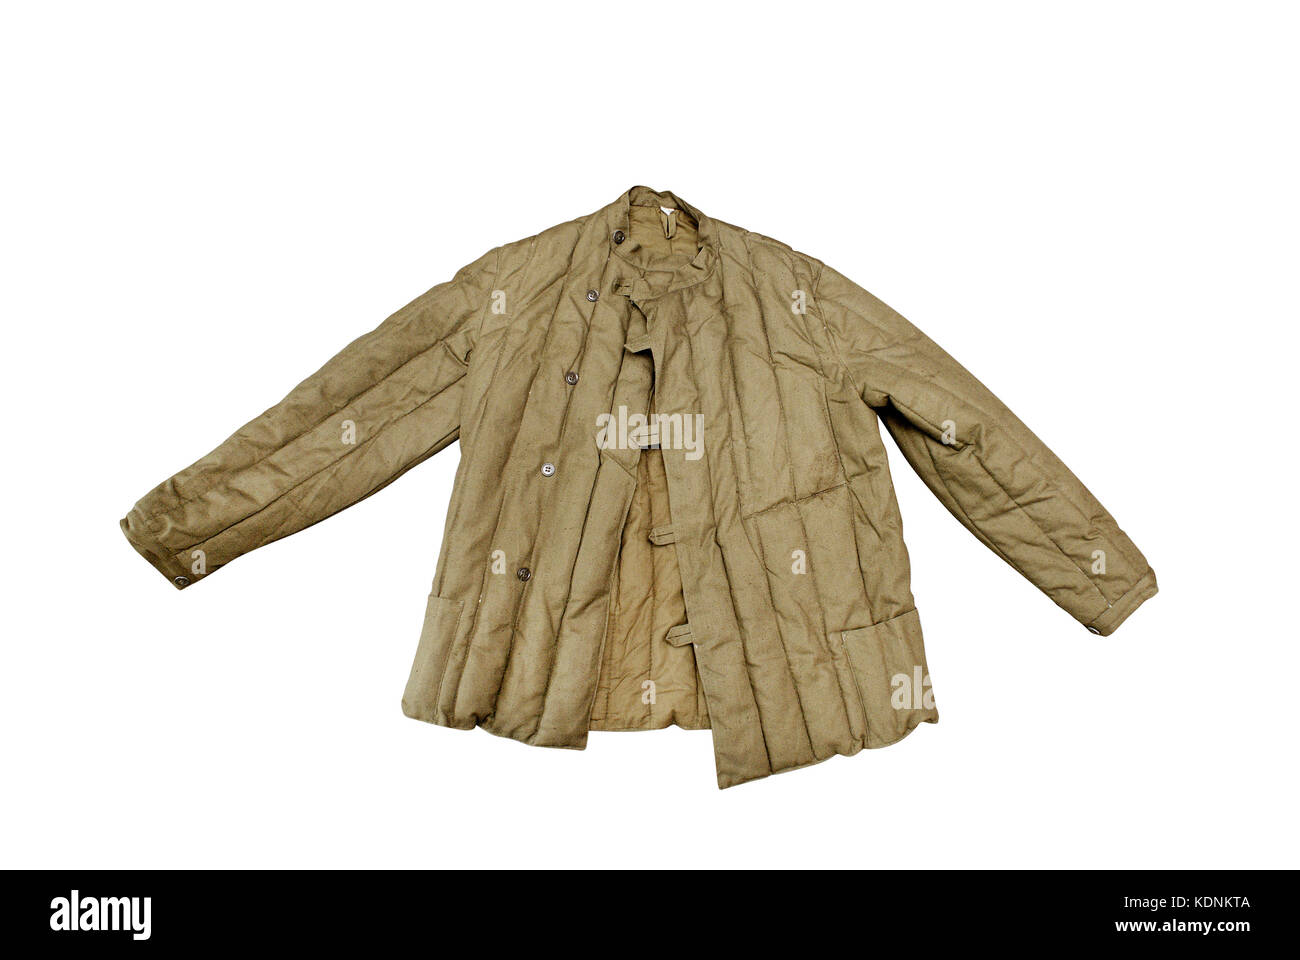 Die waehrungen gesteppter Baumwolle Jacke so genannte "vatnik'. alltäglichen Kleidung der sowjetischen Periode durch die Armee Menschen, Arbeiter, Gefangene (Farbe schwarz) Landschaft peo Stockfoto